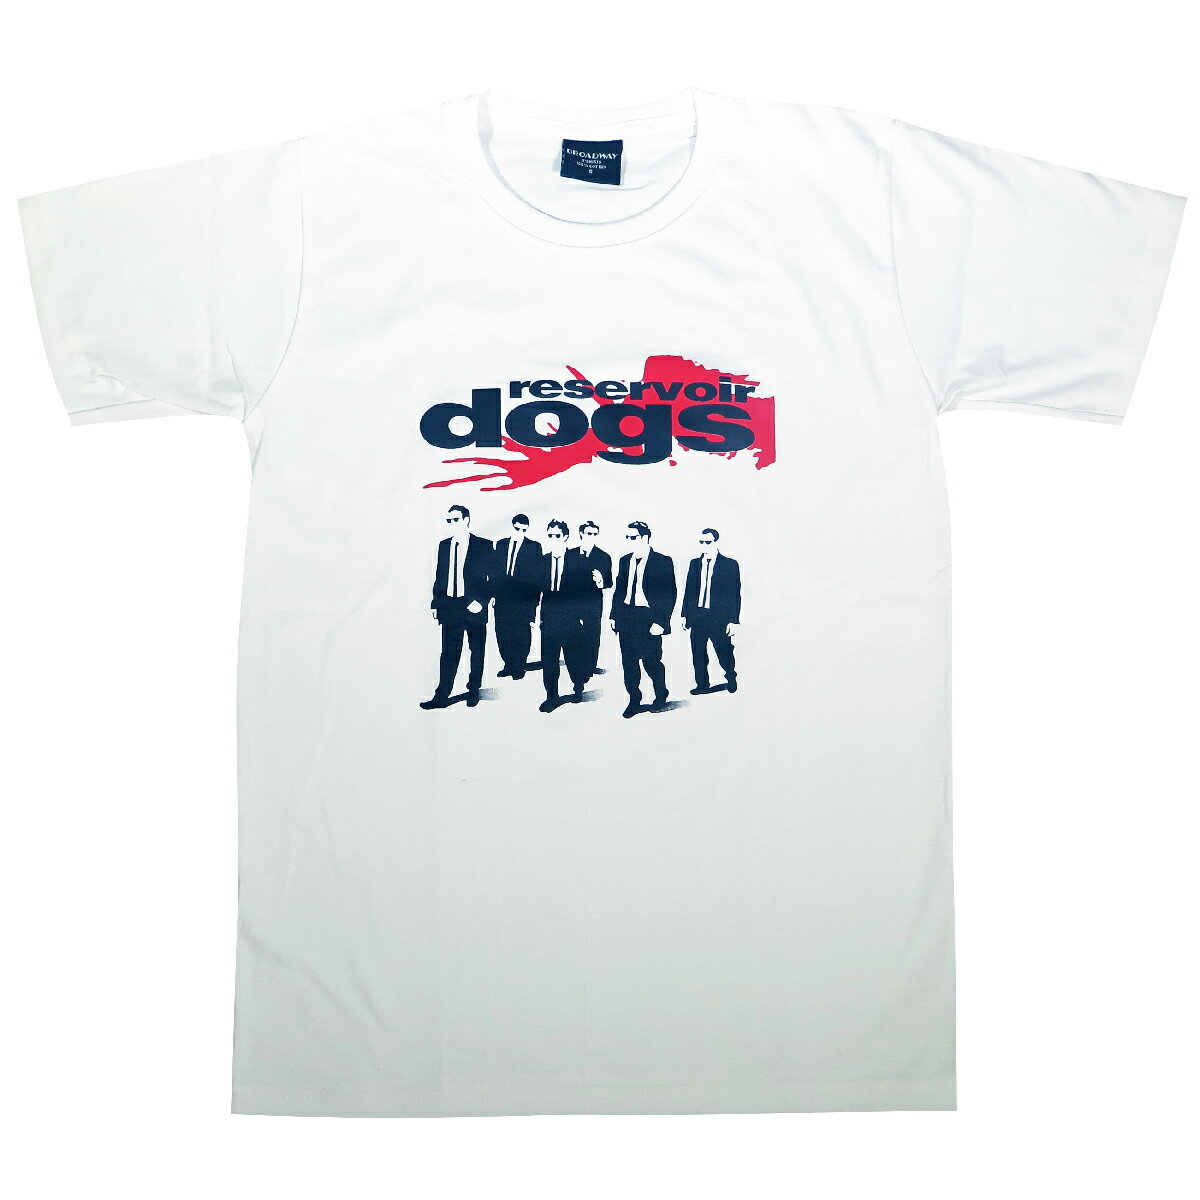 【土日も発送】 レザボア ドッグス Tシャツ Reservoir Dogs 白 クエンティン タランティーノ Tシャツ ロックTシャツ バンドTシャツ brw ホワイト